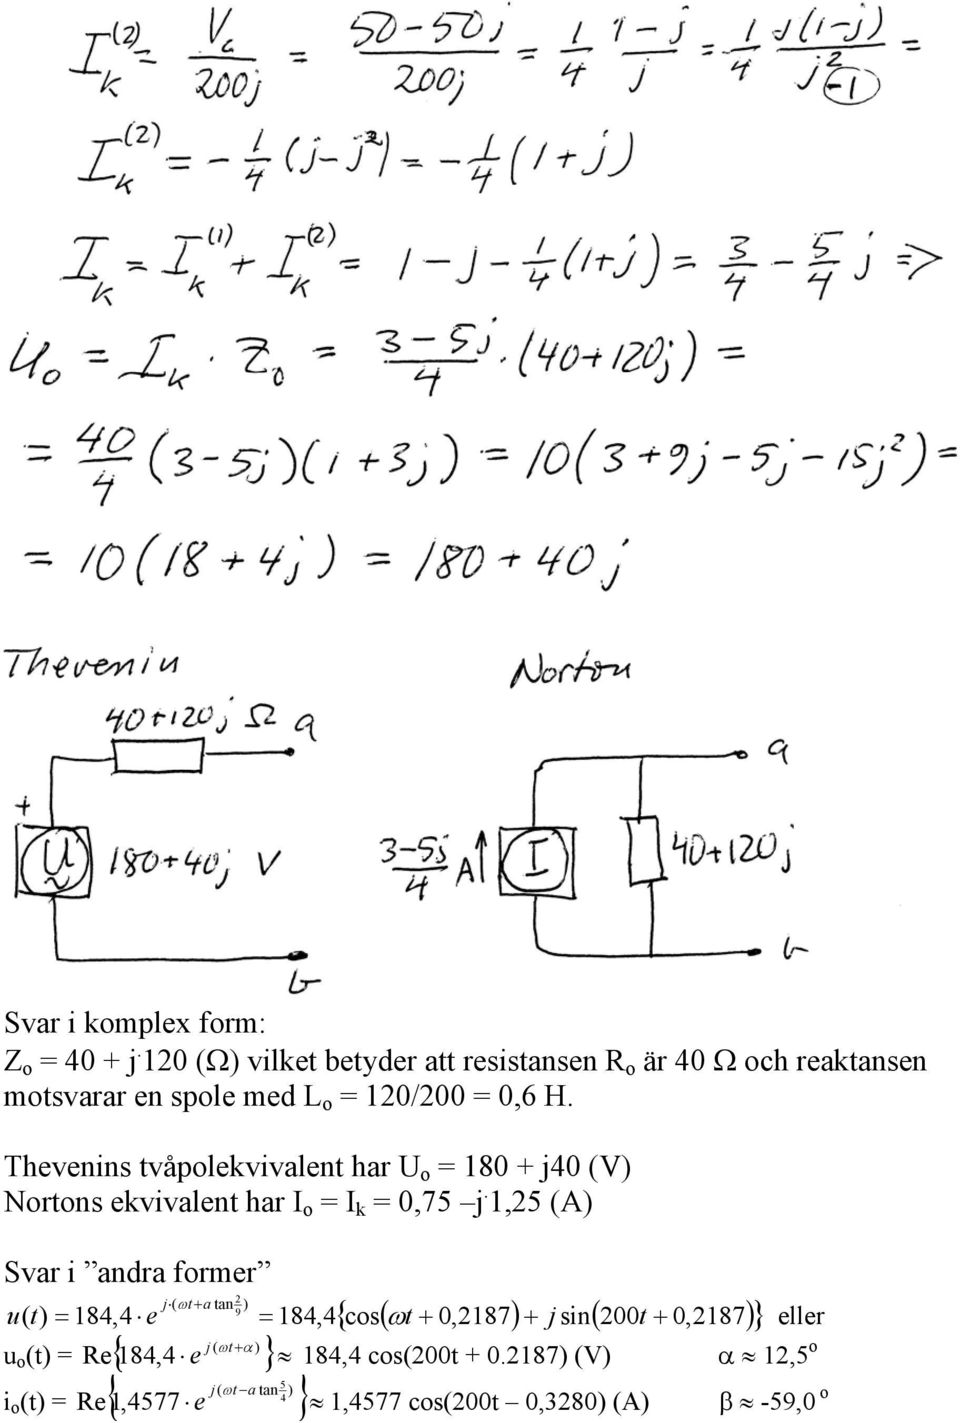 Thevenins tvåpolekvivalent har U o = 180 + j40 (V) Nortons ekvivalent har I o = I k = 0,75 j.